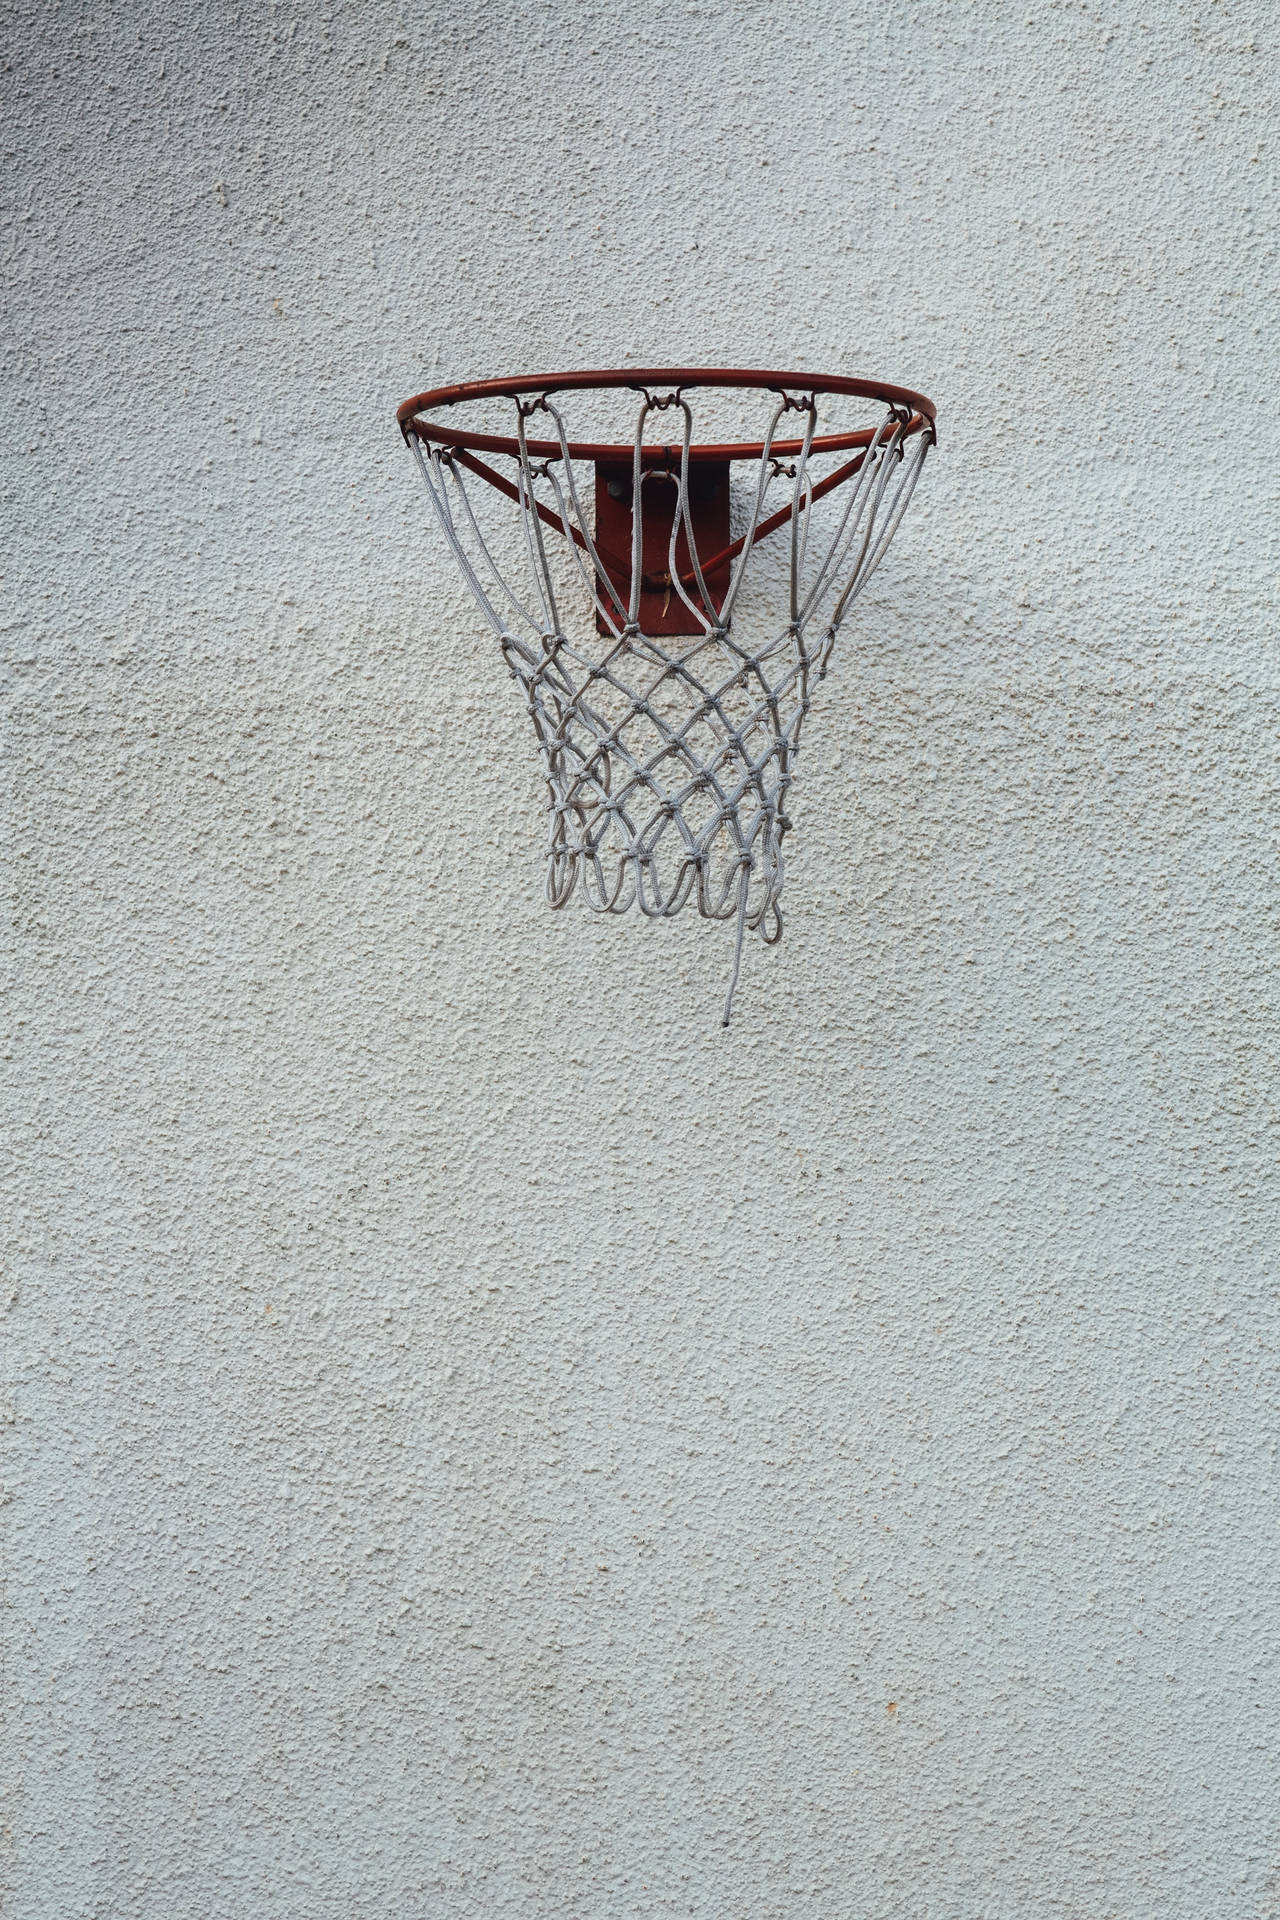 Basketball 2333X3500 wallpaper